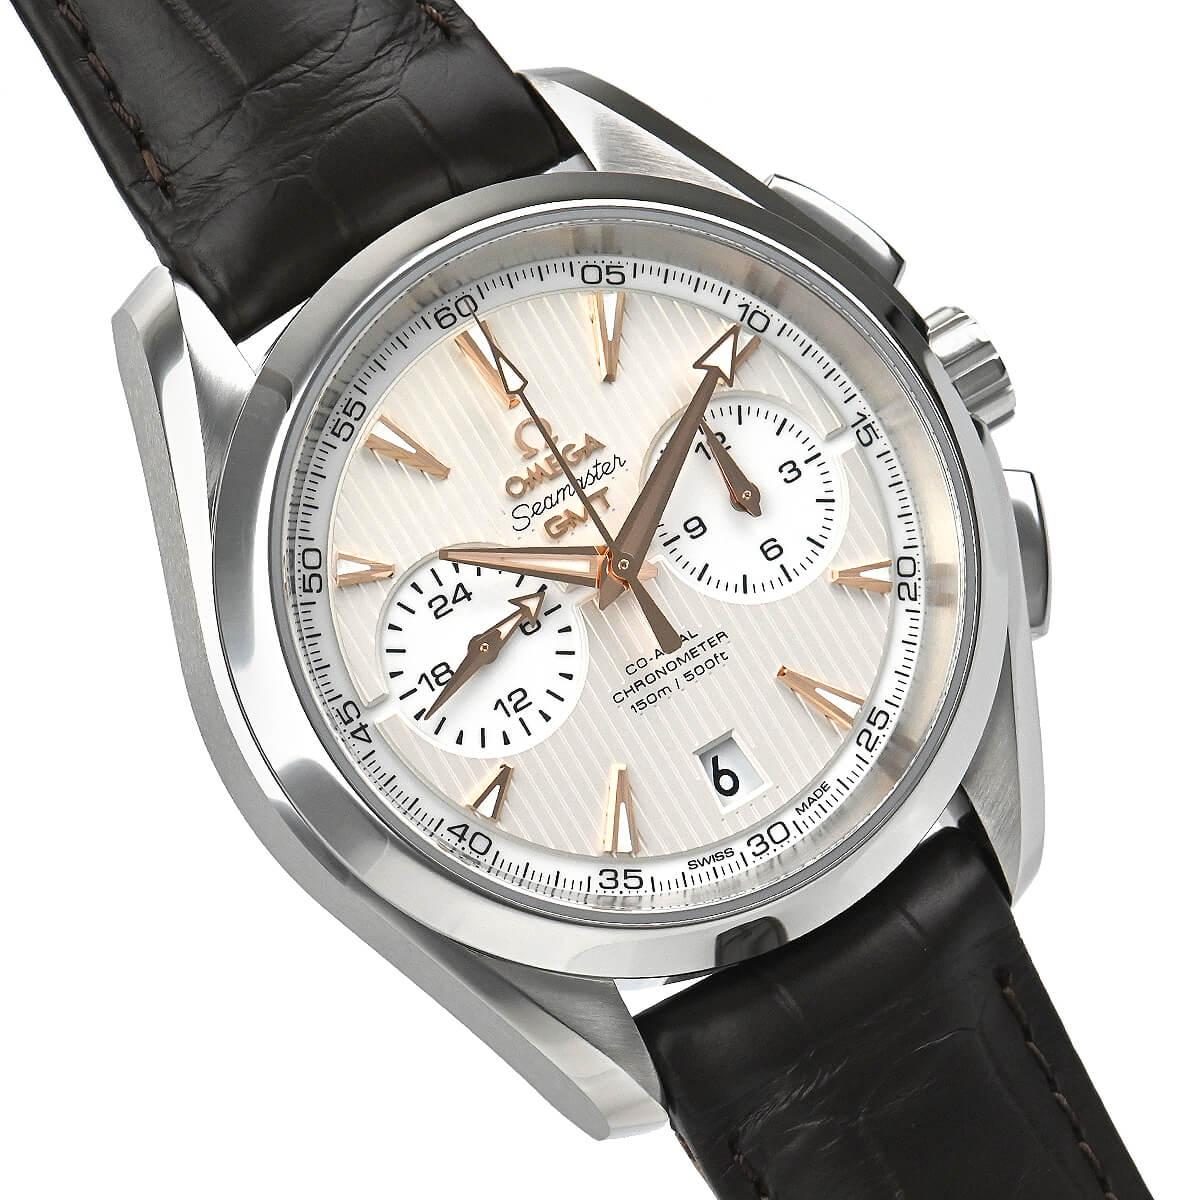 シーマスター アクアテラ クロノグラフ GMT Ref.231.10.43.52.02.001 品 メンズ 腕時計